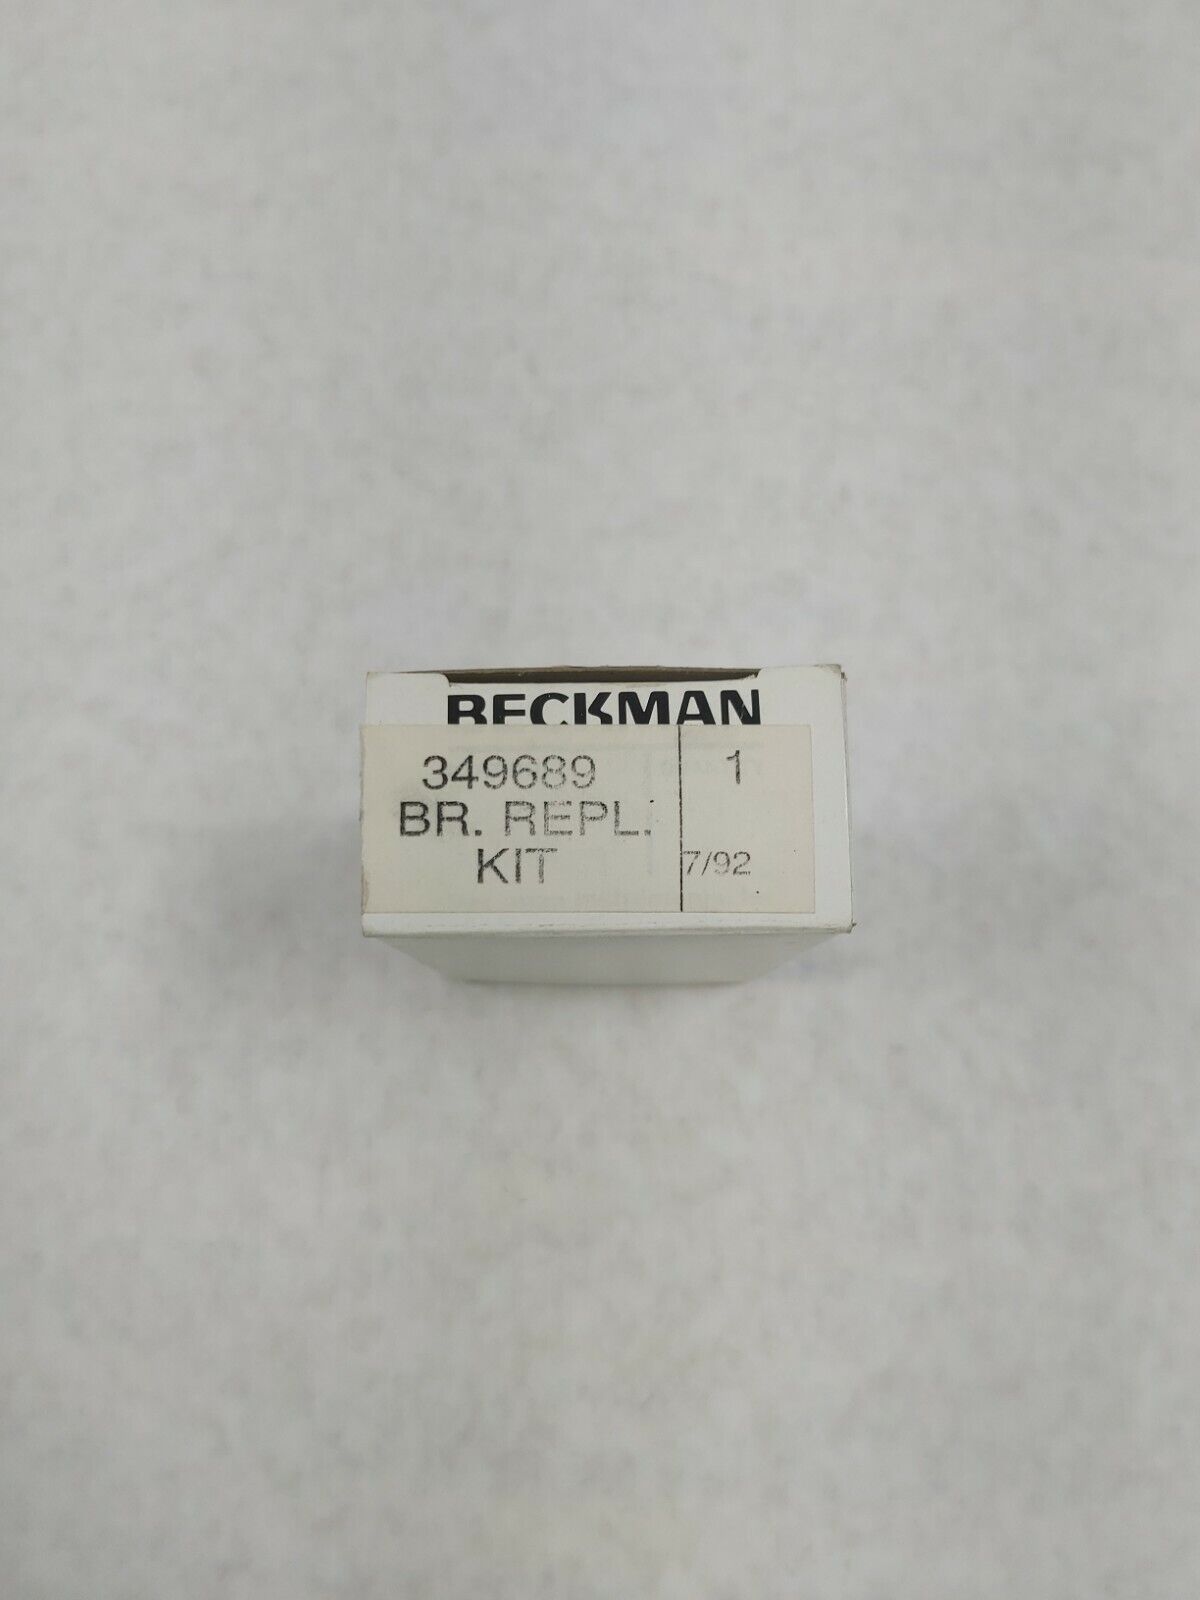 Beckman Brush Replacement Kit 349689